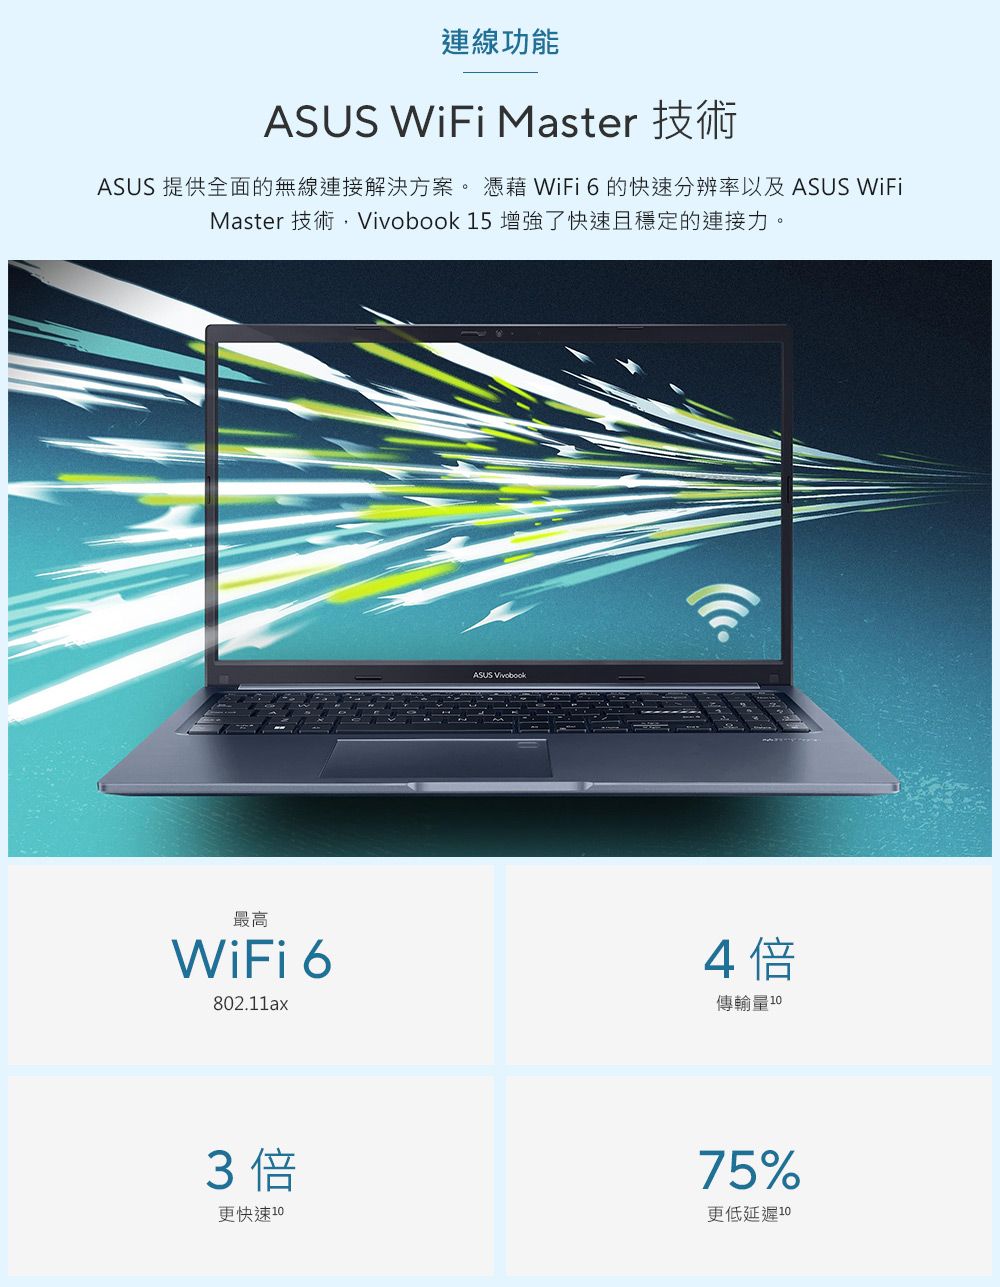 連線功能ASUS WiFi Master 技術ASUS 提供全面的無線連接解決方案。  WiFi的分辨率以及 ASUS WiFiMaster 技術, 15 增強了快速且穩定的連接力。ASUS Vivobook最高WiFi 6802.11ax4倍傳輸量3倍更快速 75%更低延遲 10